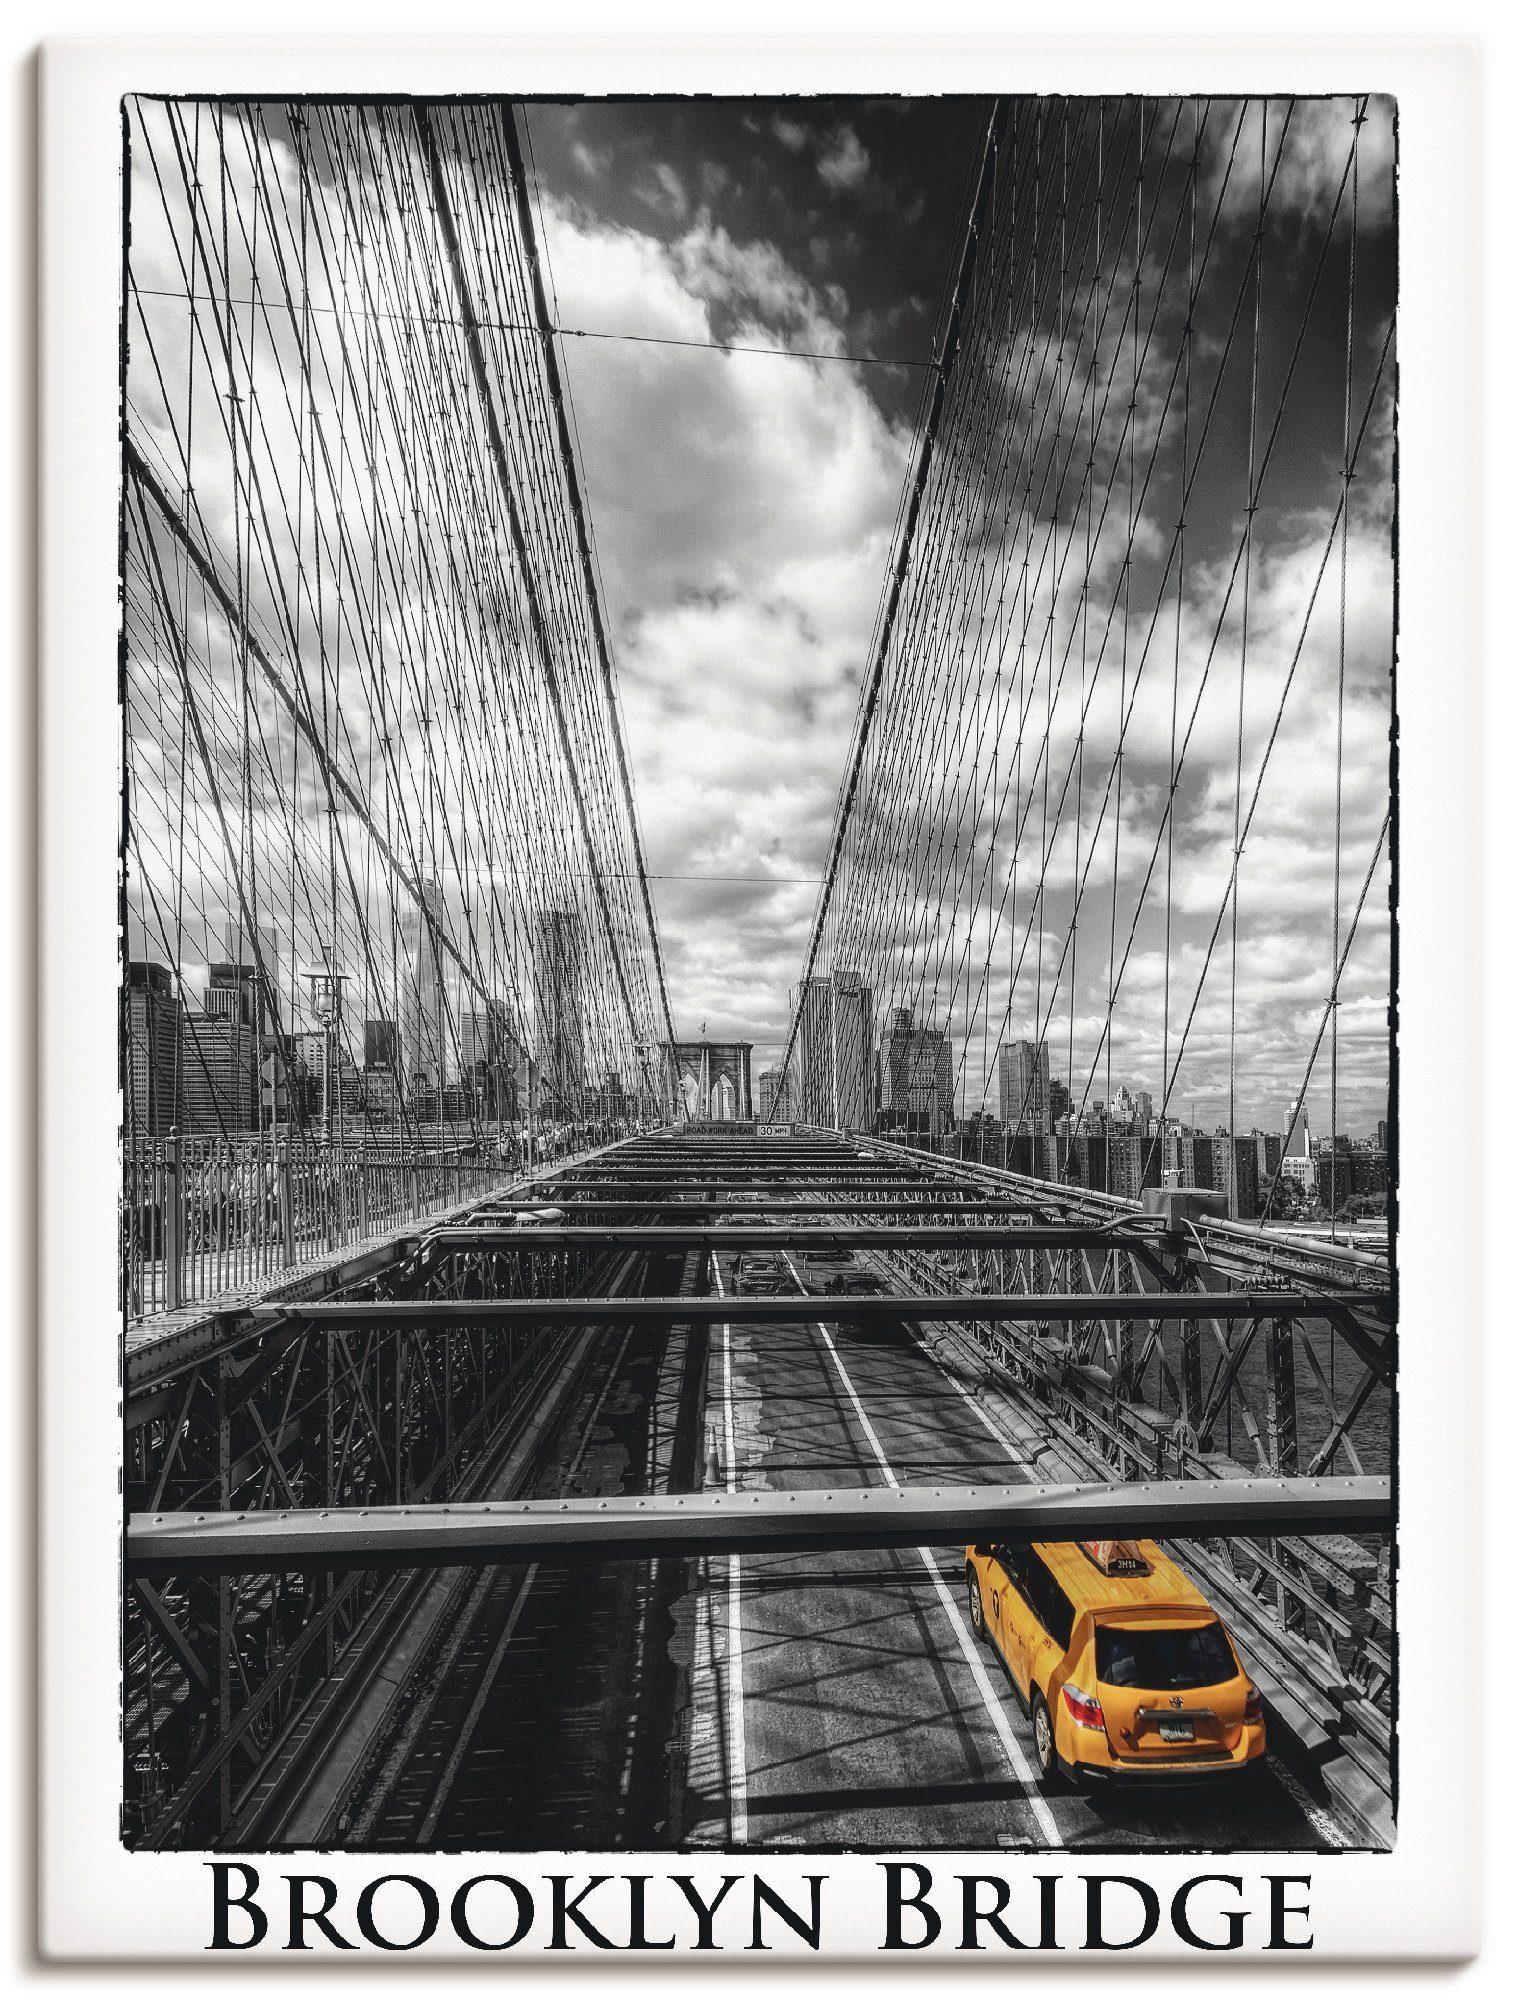 Artland Artprint New York Brooklyn Bridge in vele afmetingen & productsoorten -artprint op linnen, poster, muursticker / wandfolie ook geschikt voor de badkamer (1 stuk)